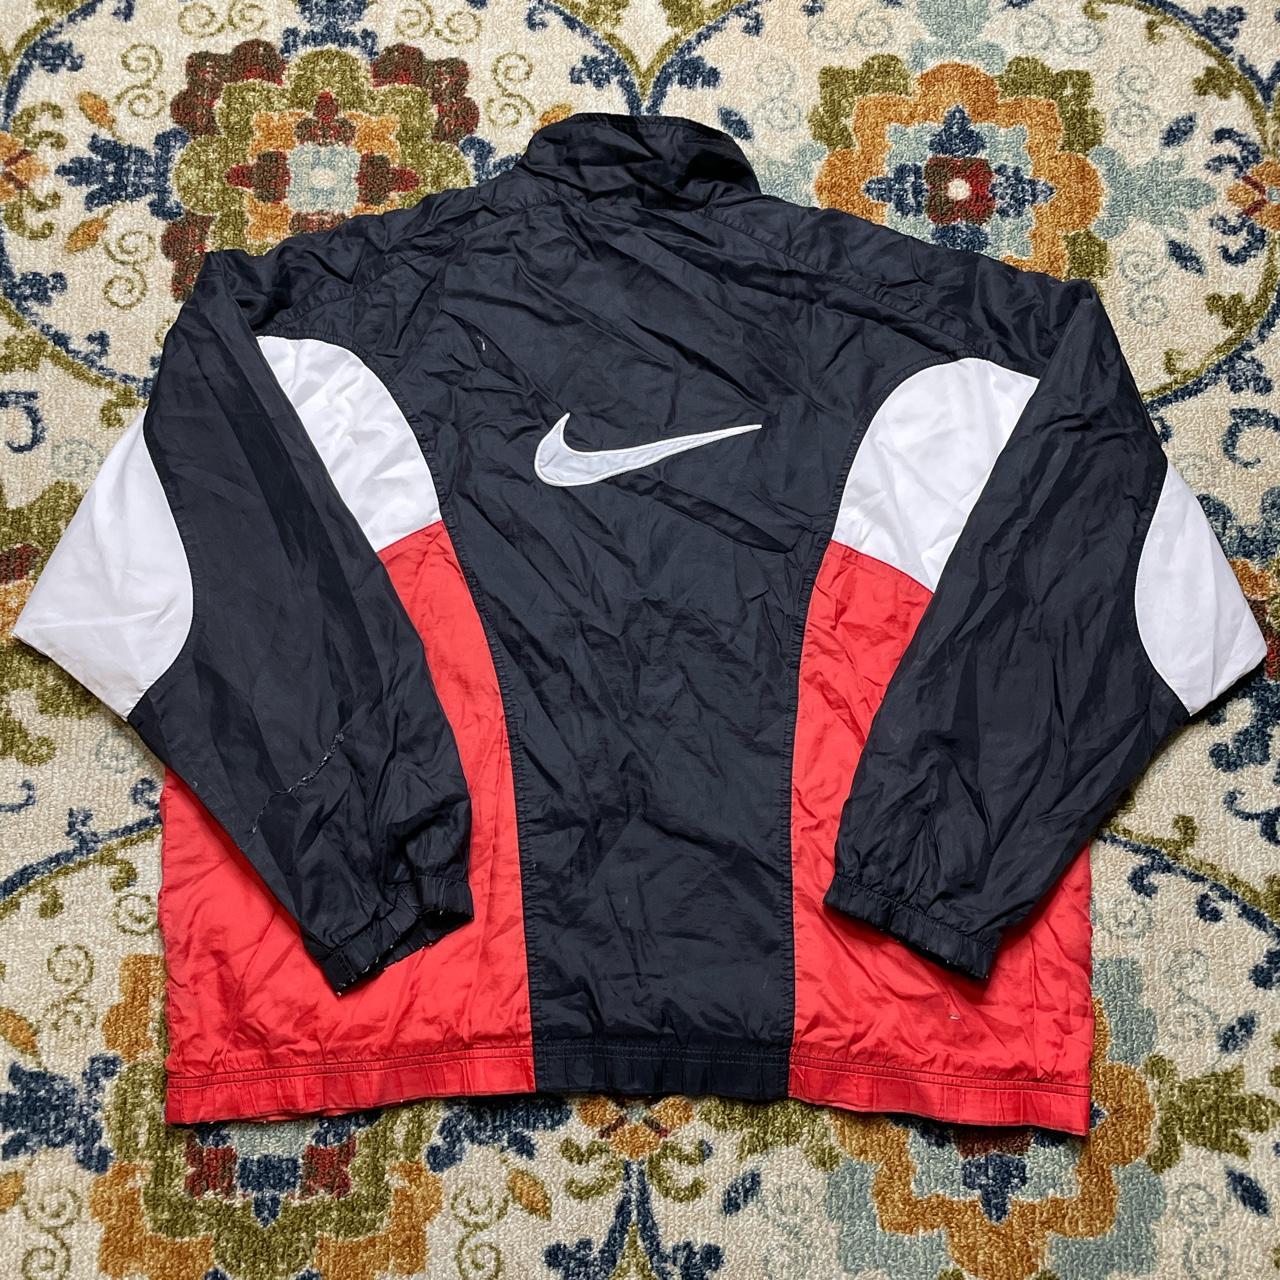 Vintage Nike zip up colorblock windbreaker jacket XL... - Depop